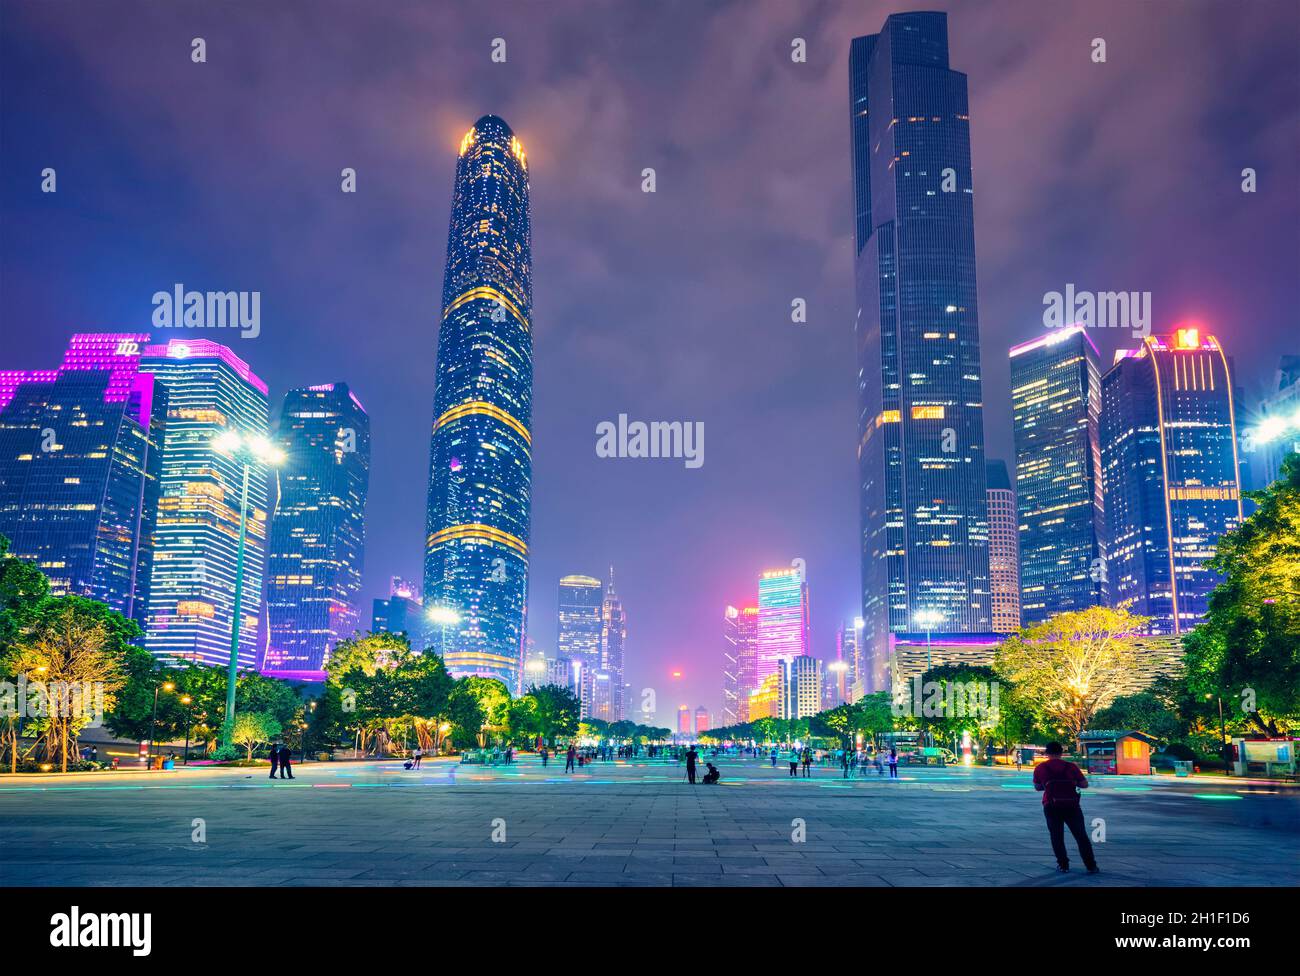 GUANGZHOU, CHINE - le 27 AVRIL 2018 : illuminé dans la soirée, le paysage urbain de Guangzhou au-dessus de la rivière des perles.Guangzhou, Chine Banque D'Images